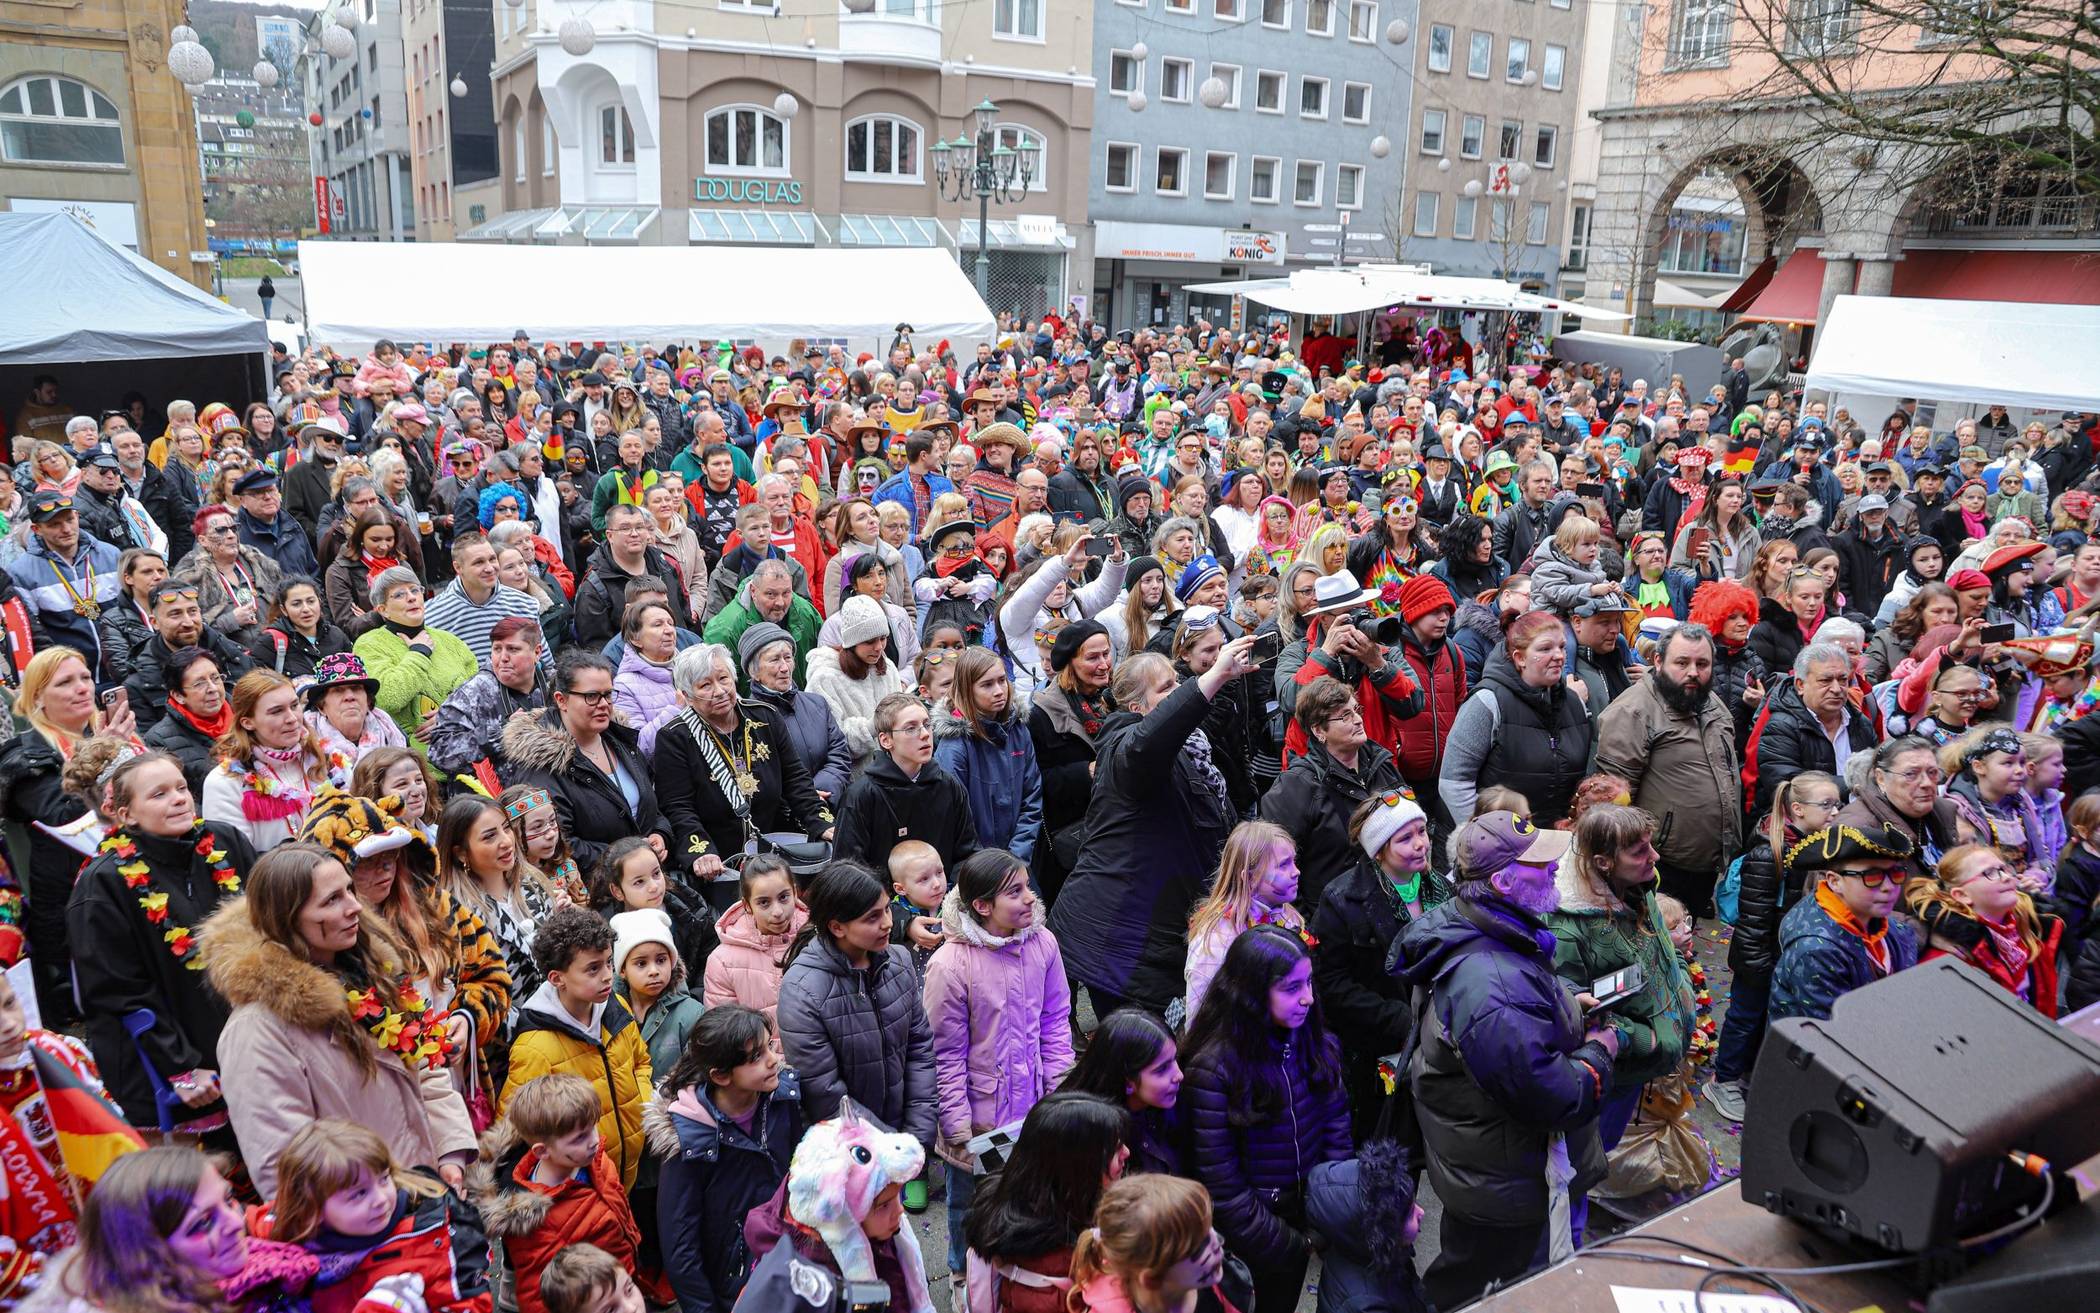 Bilder: Karnevalsparty vor dem Wuppertaler Rathaus​